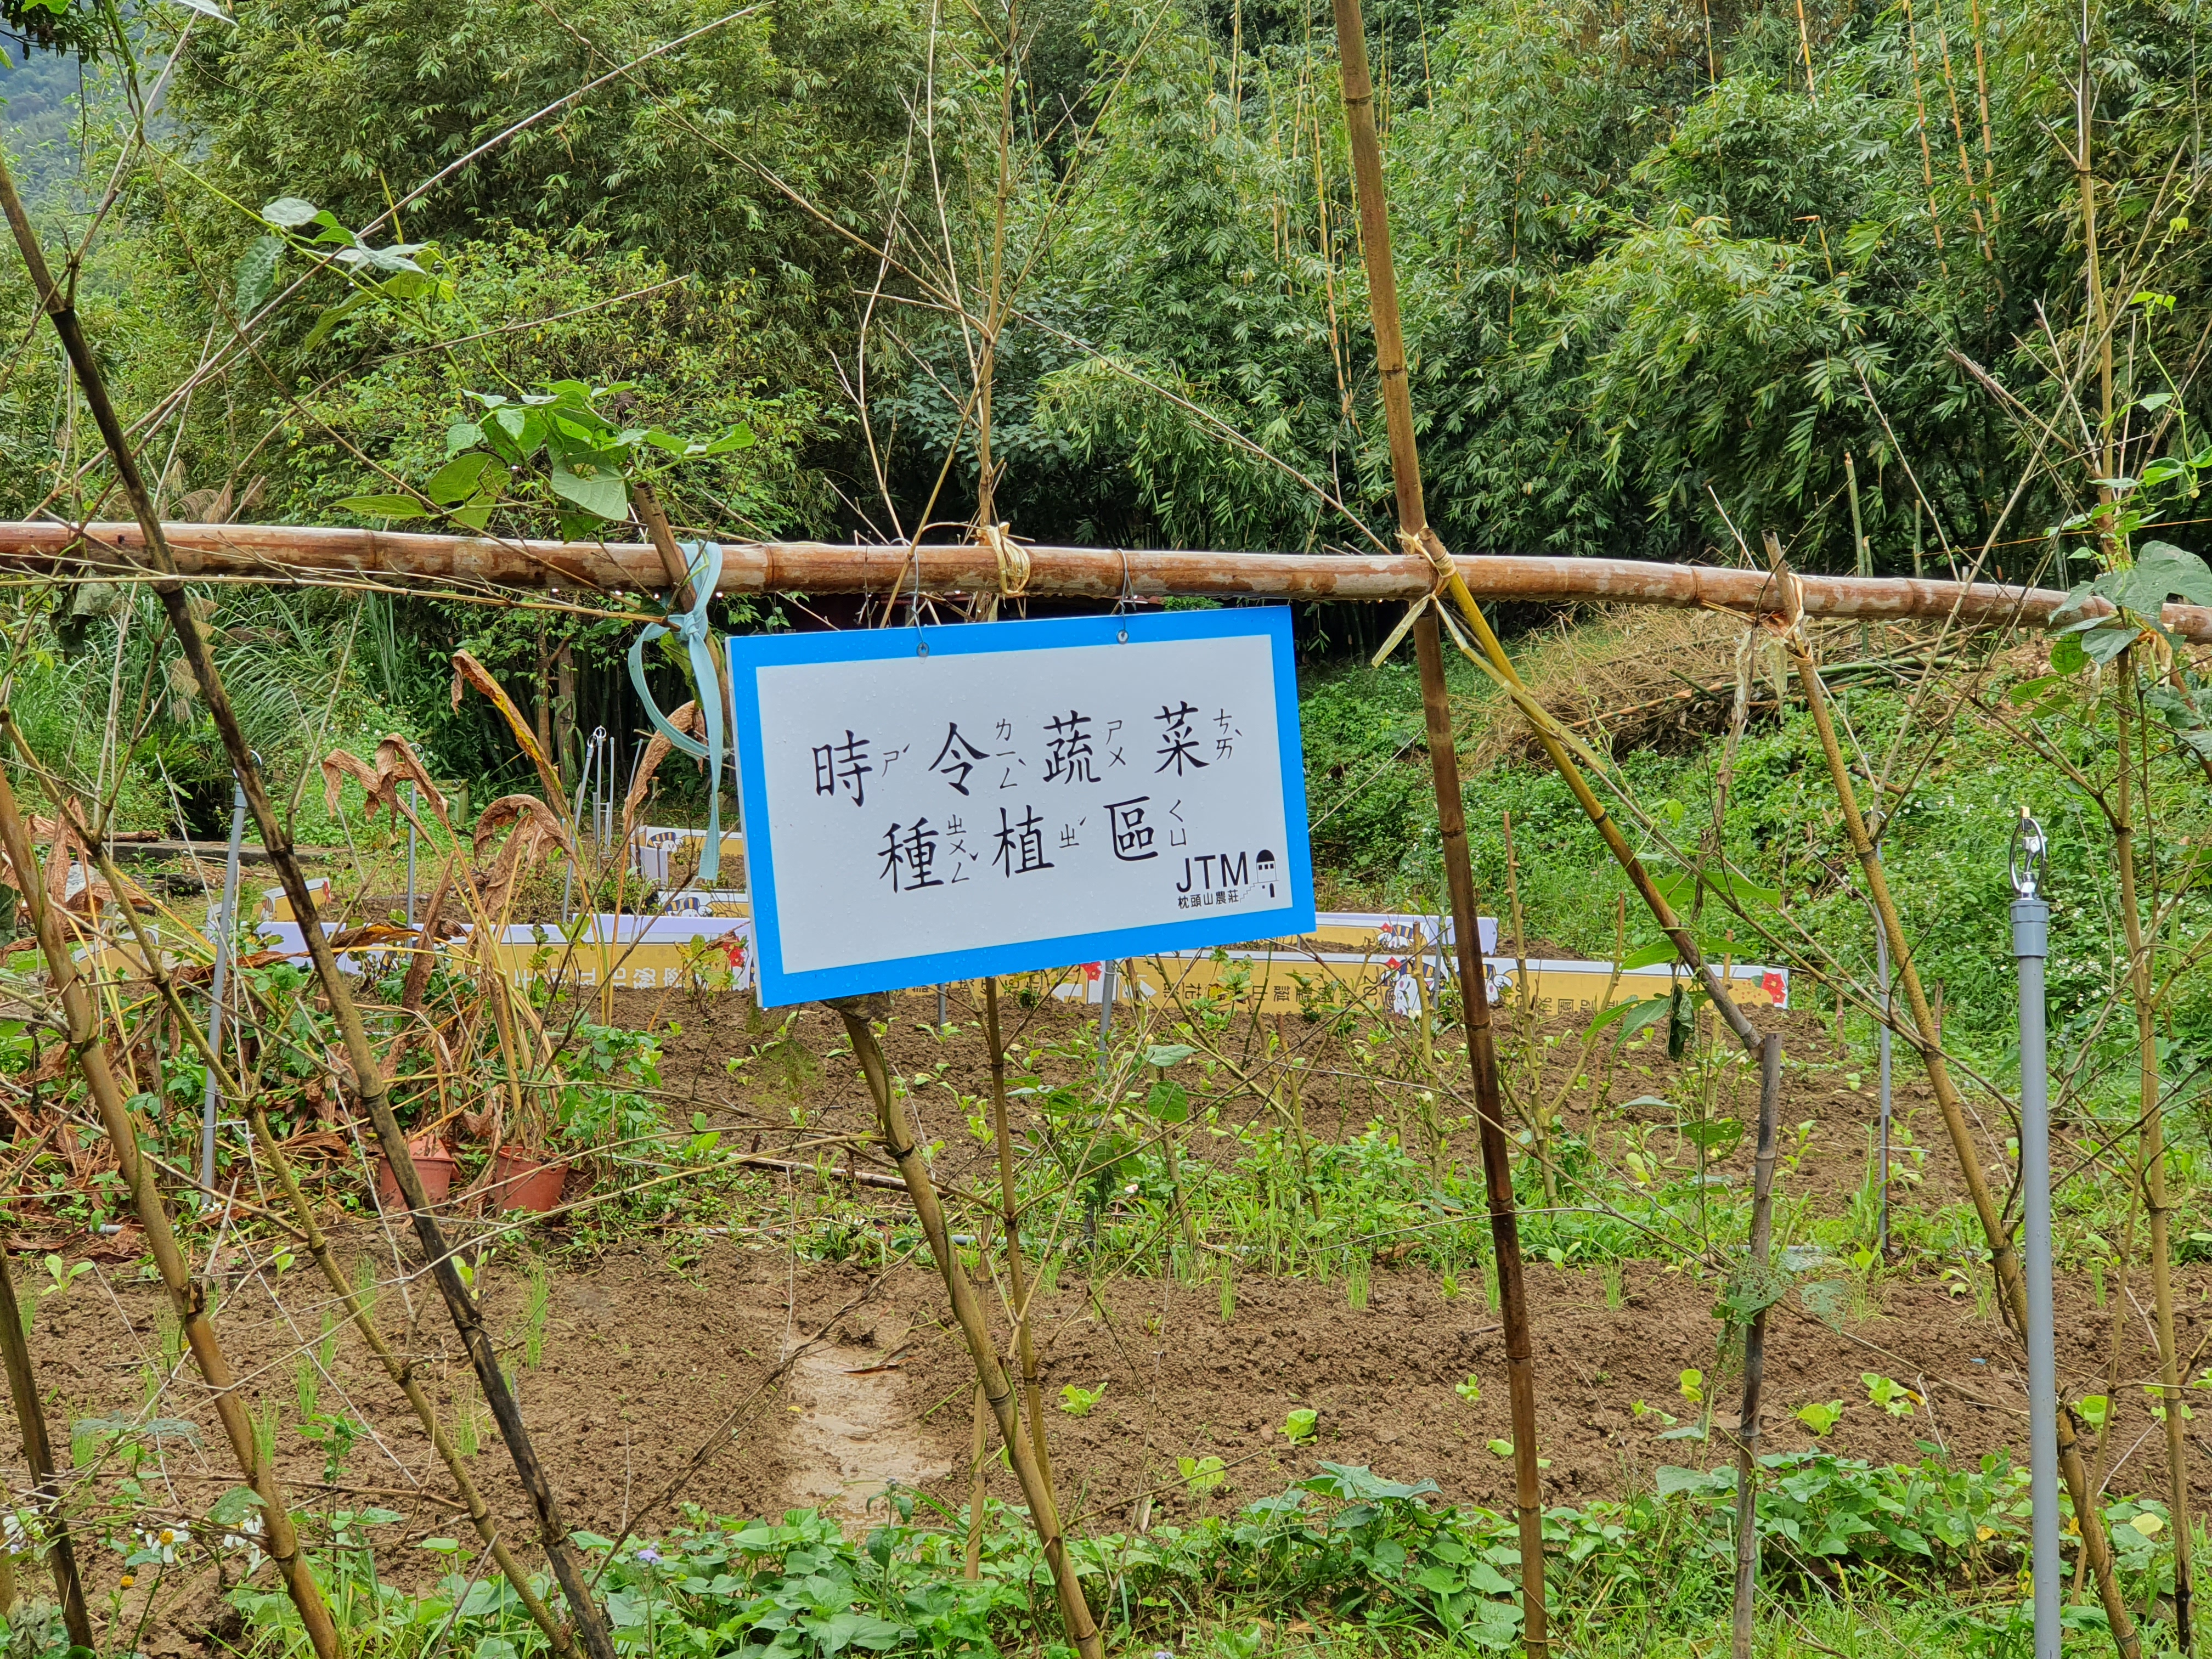 提供遊客體驗的蔬菜田園